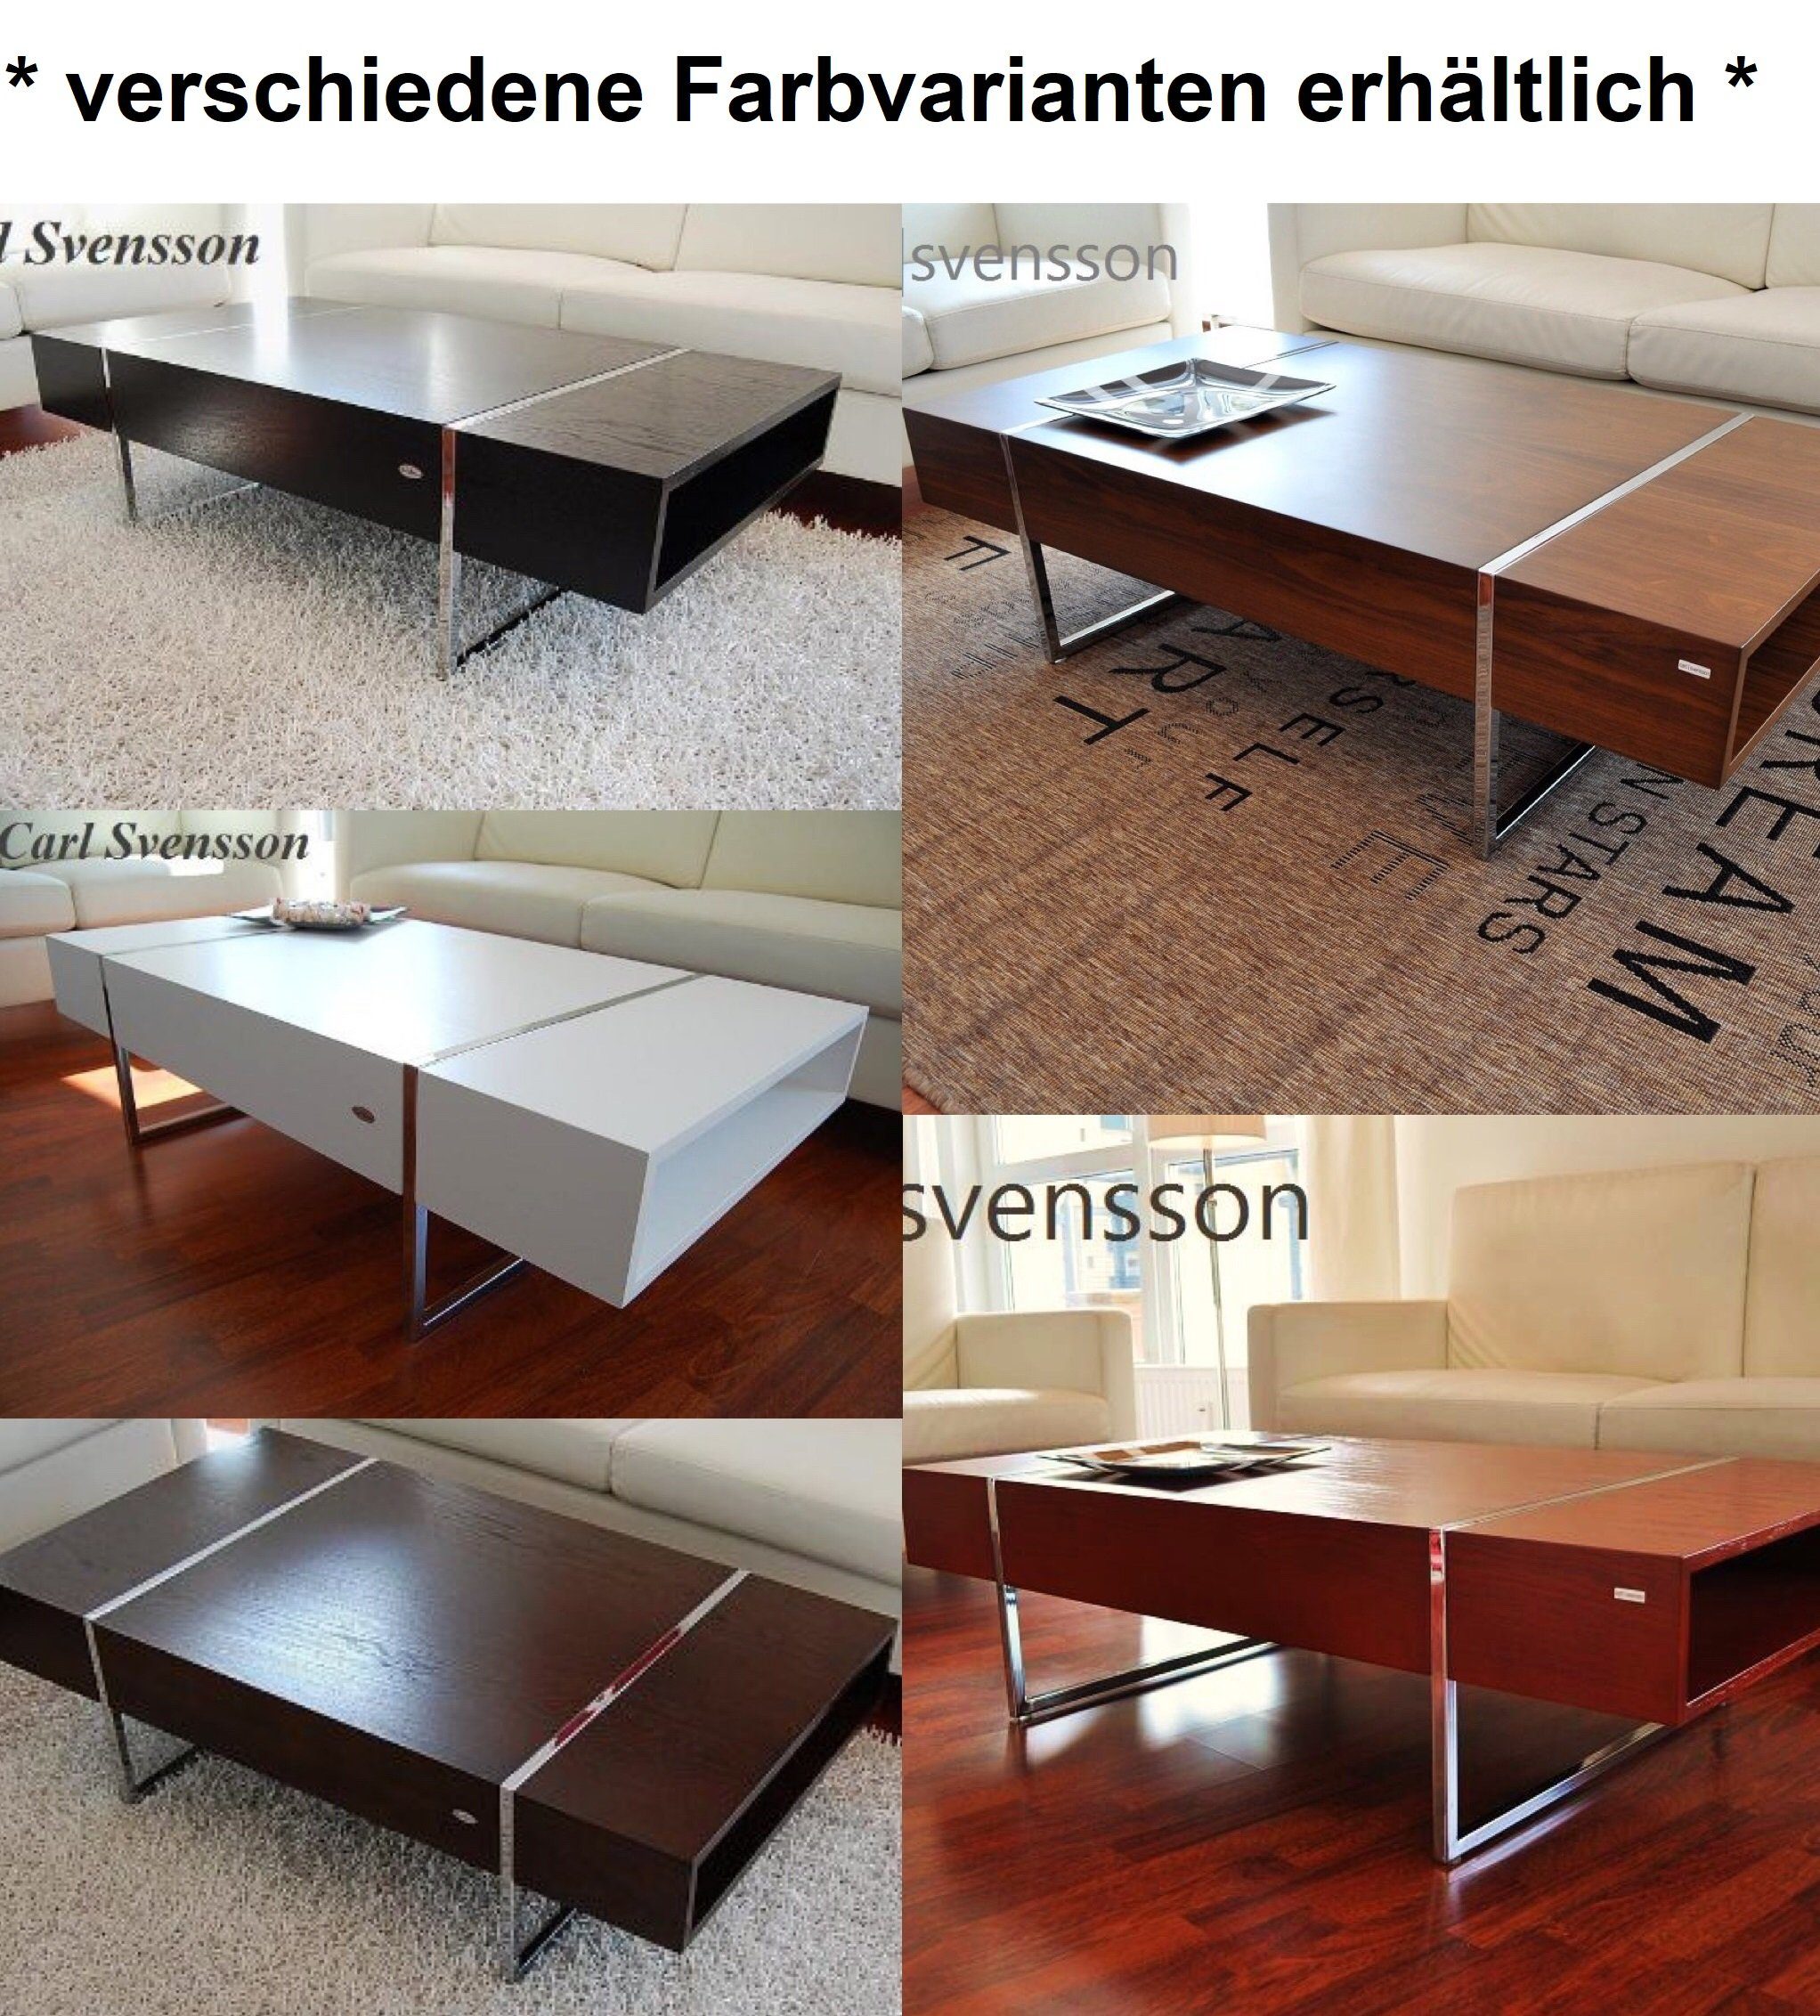 svensson Tisch Kirsche carl Couchtisch Carl N-111 Design Svensson Chrom Kirschbaum Couchtisch